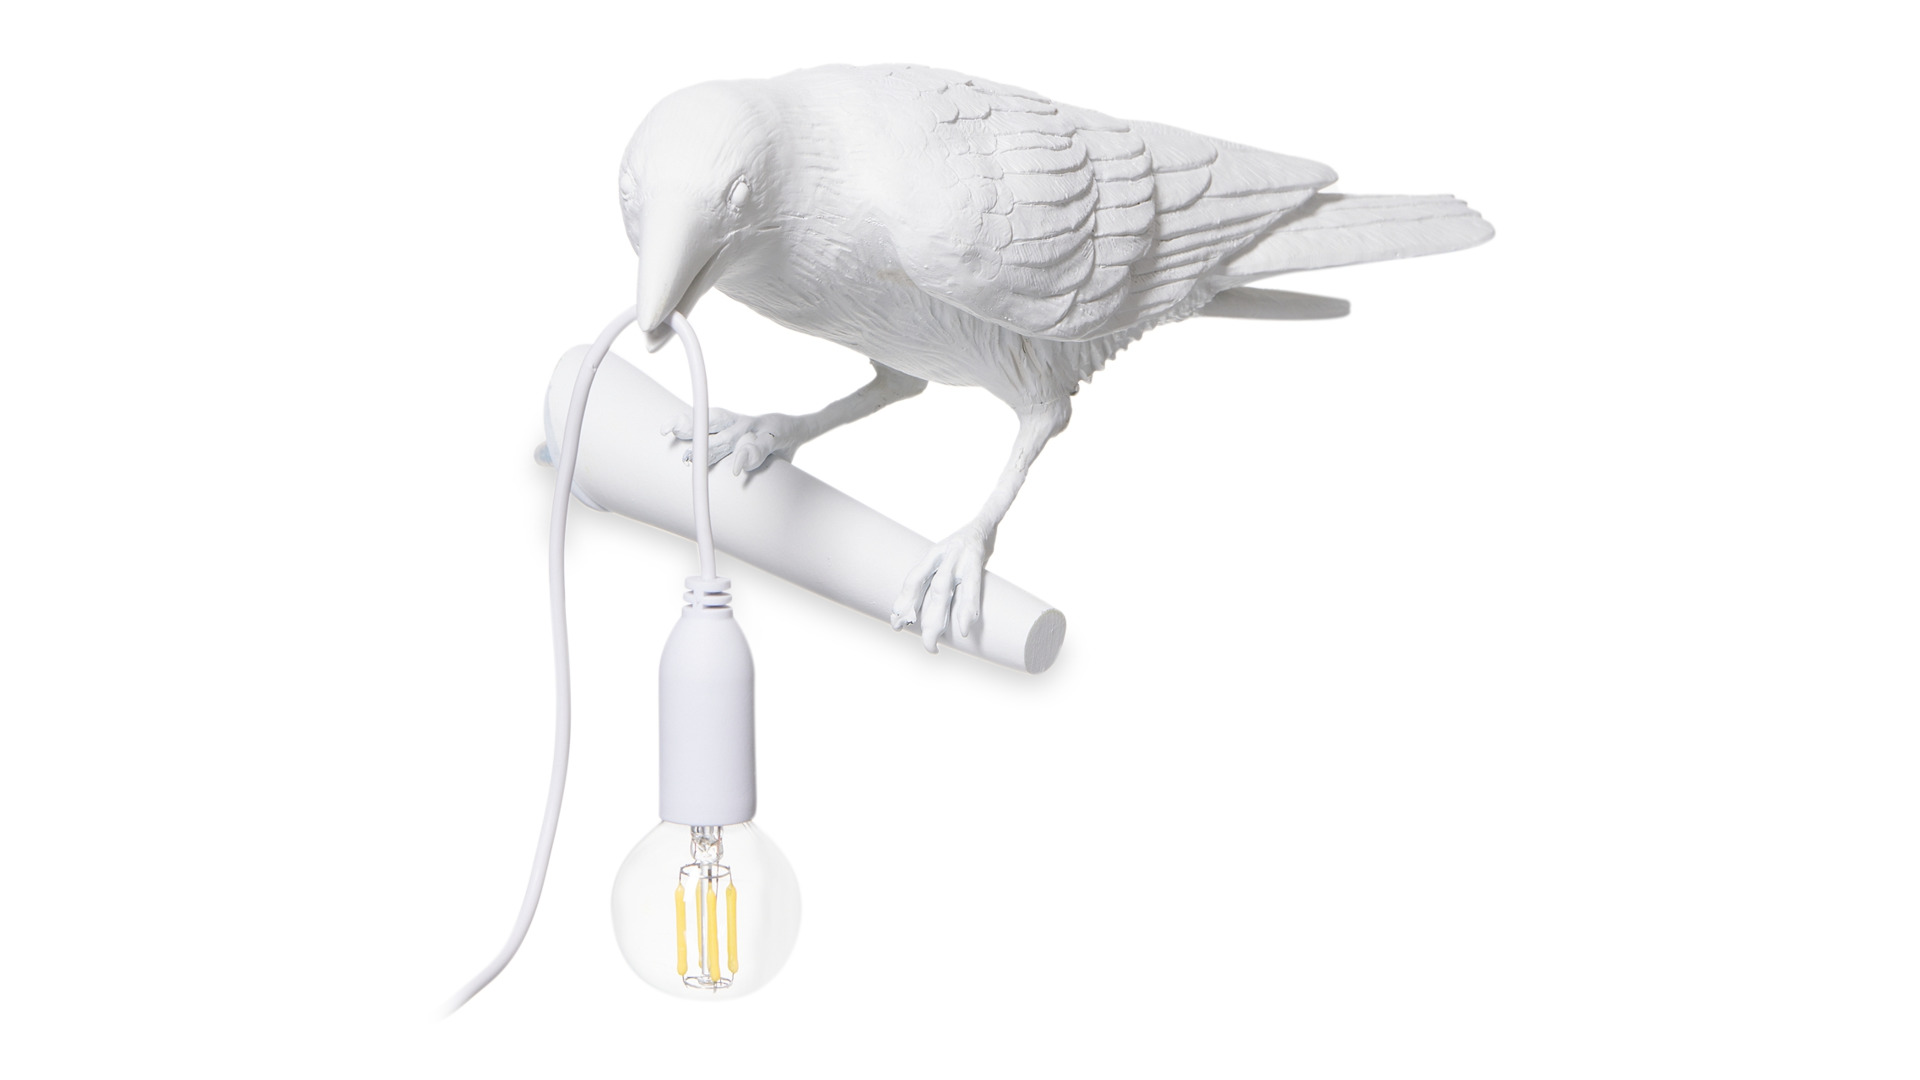 Настенный светильник Seletti Птица смотрит налево 32,8x14,5 см, смола, белый